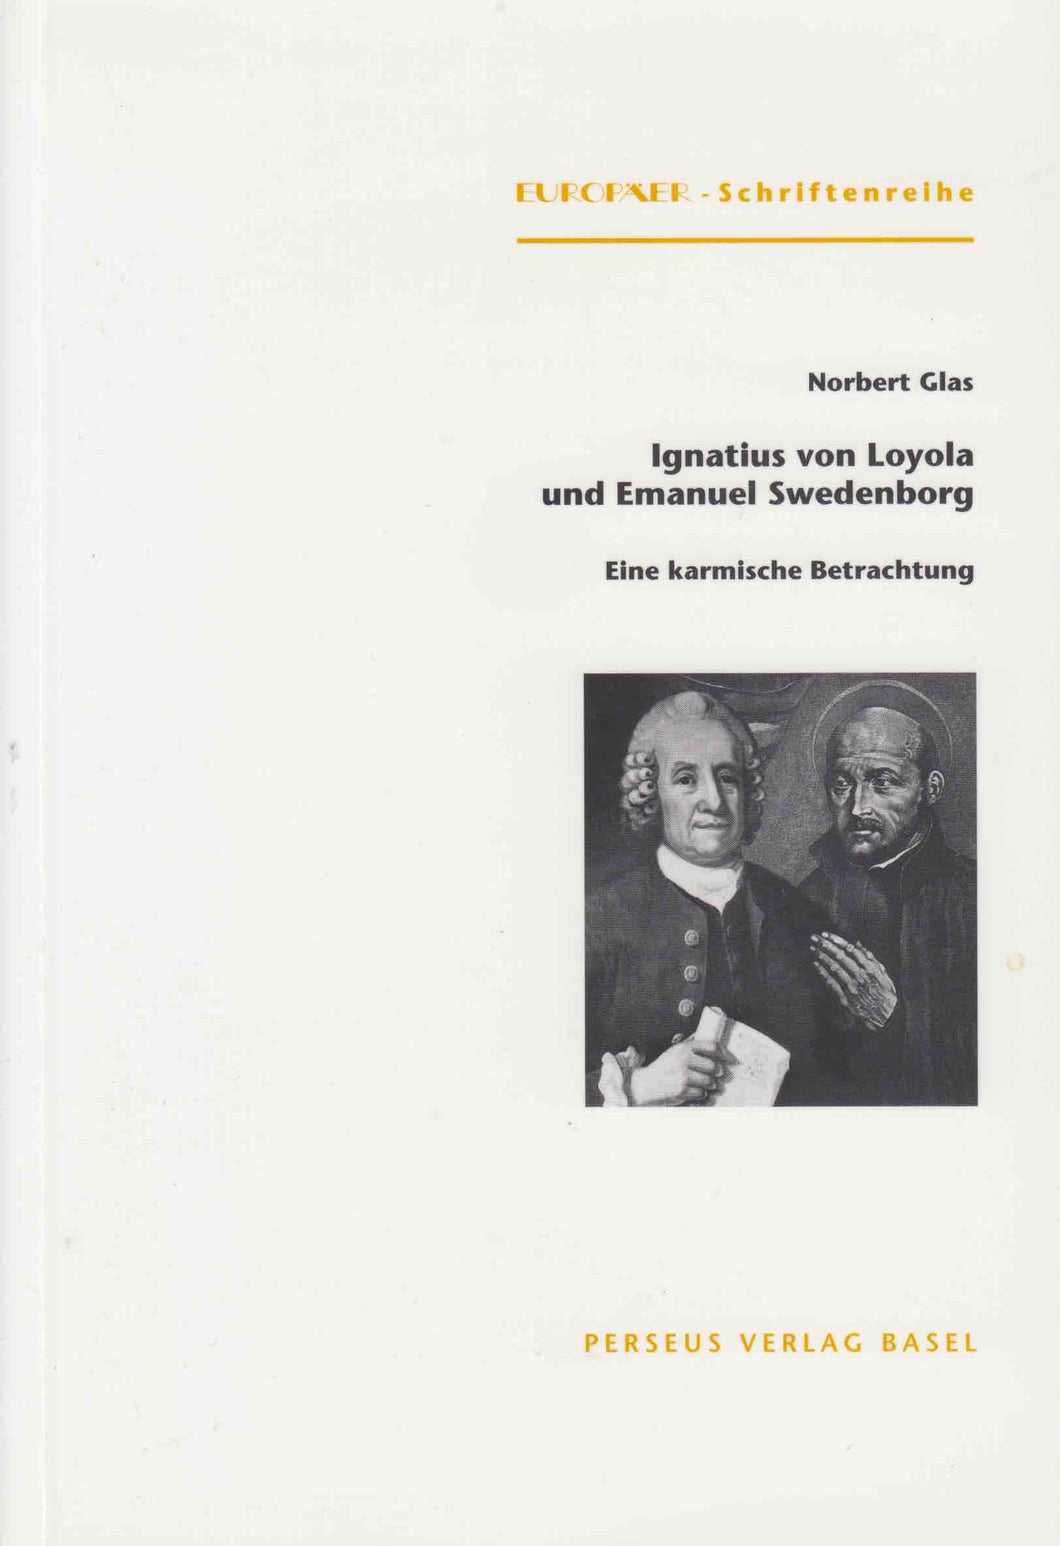 Ignatius von Loyola und Emanuel Swedenborg